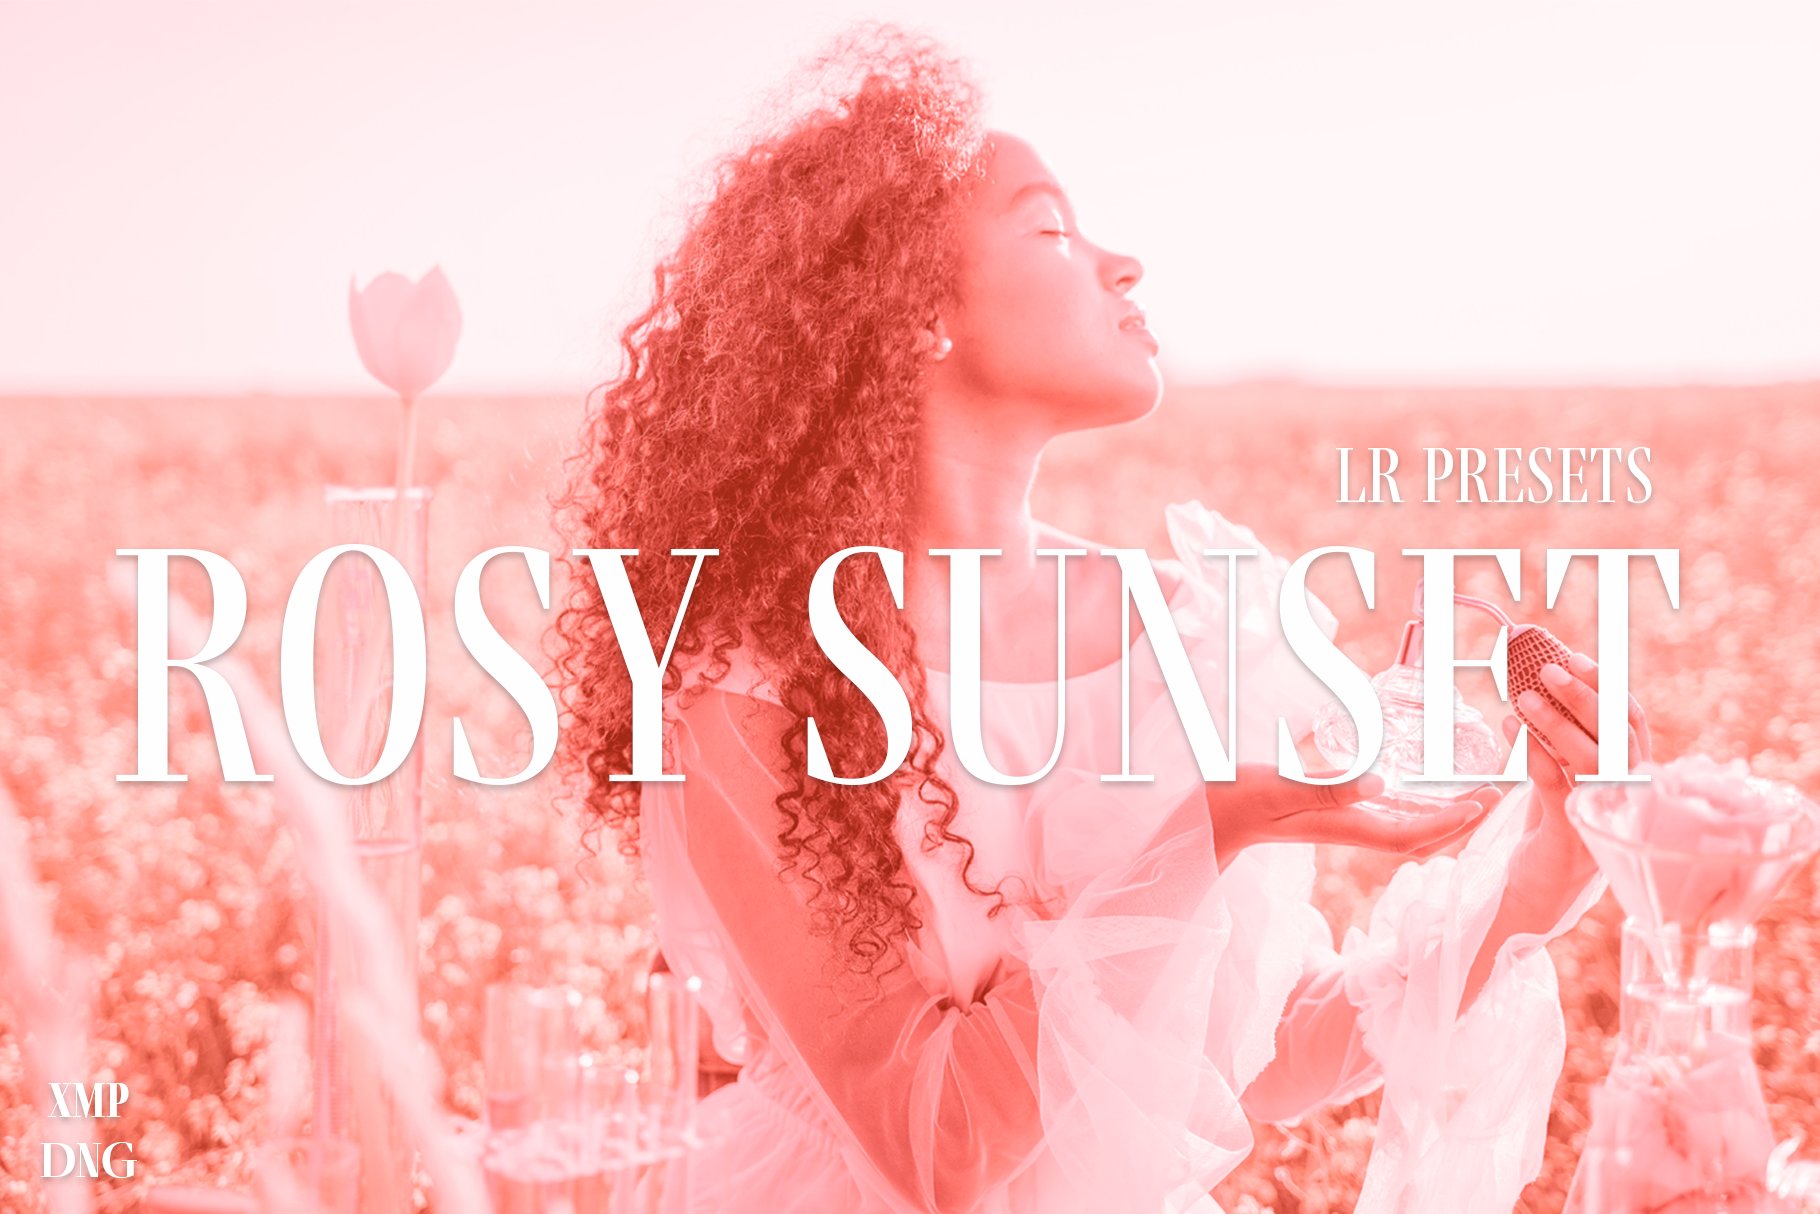 Rosy Sunset Lightroom presets setcover image.